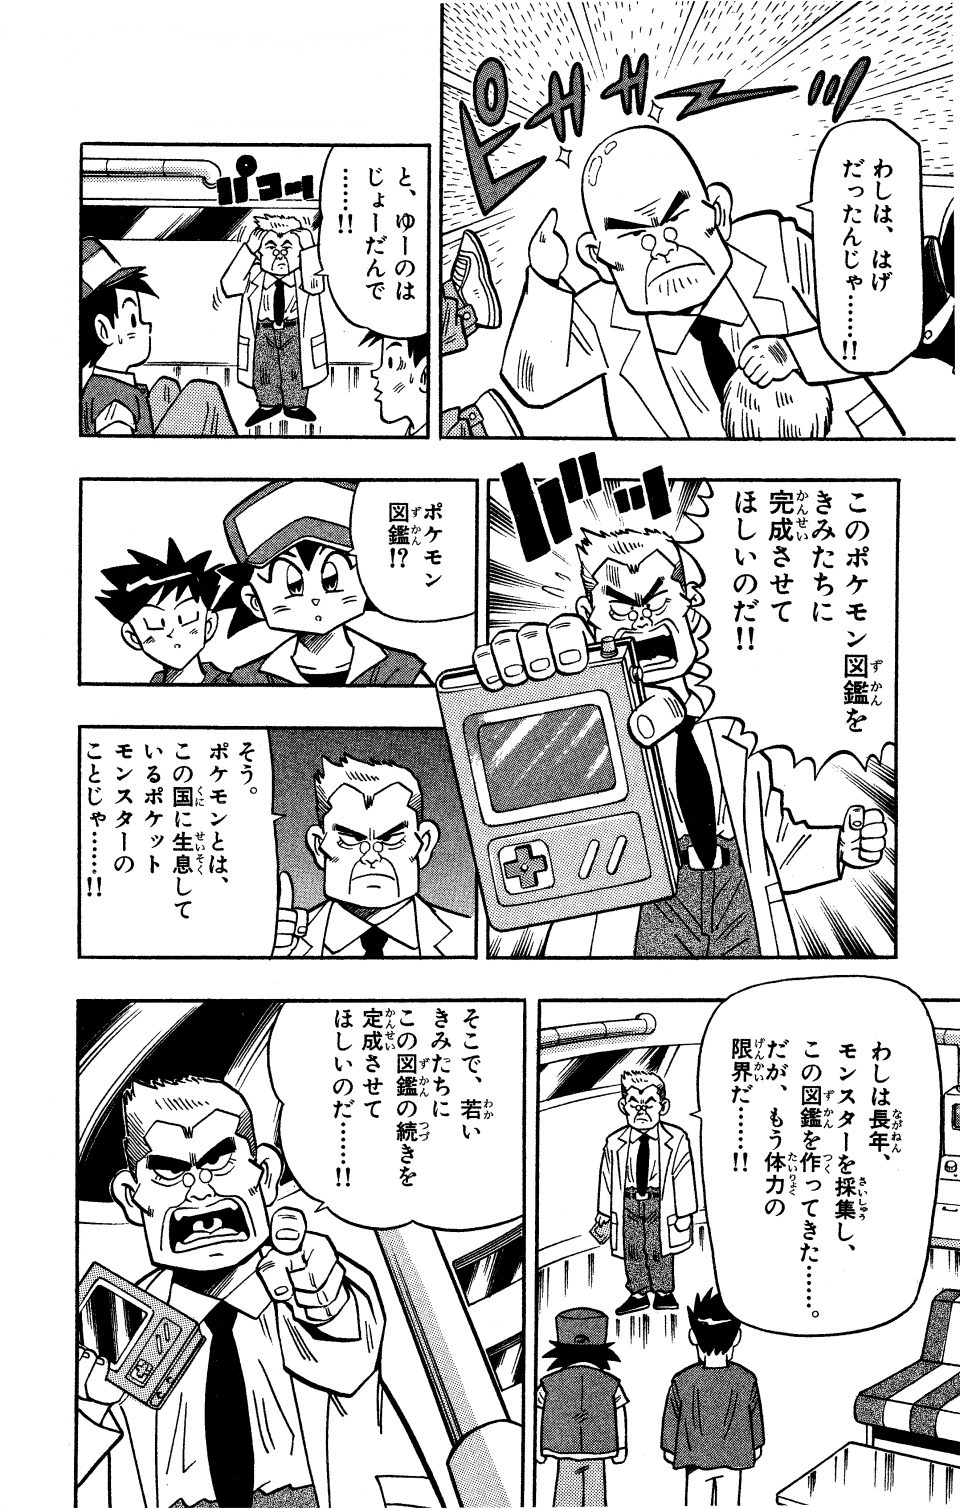 ポケットモンスター 第1話 コロコロオンライン コロコロコミック公式